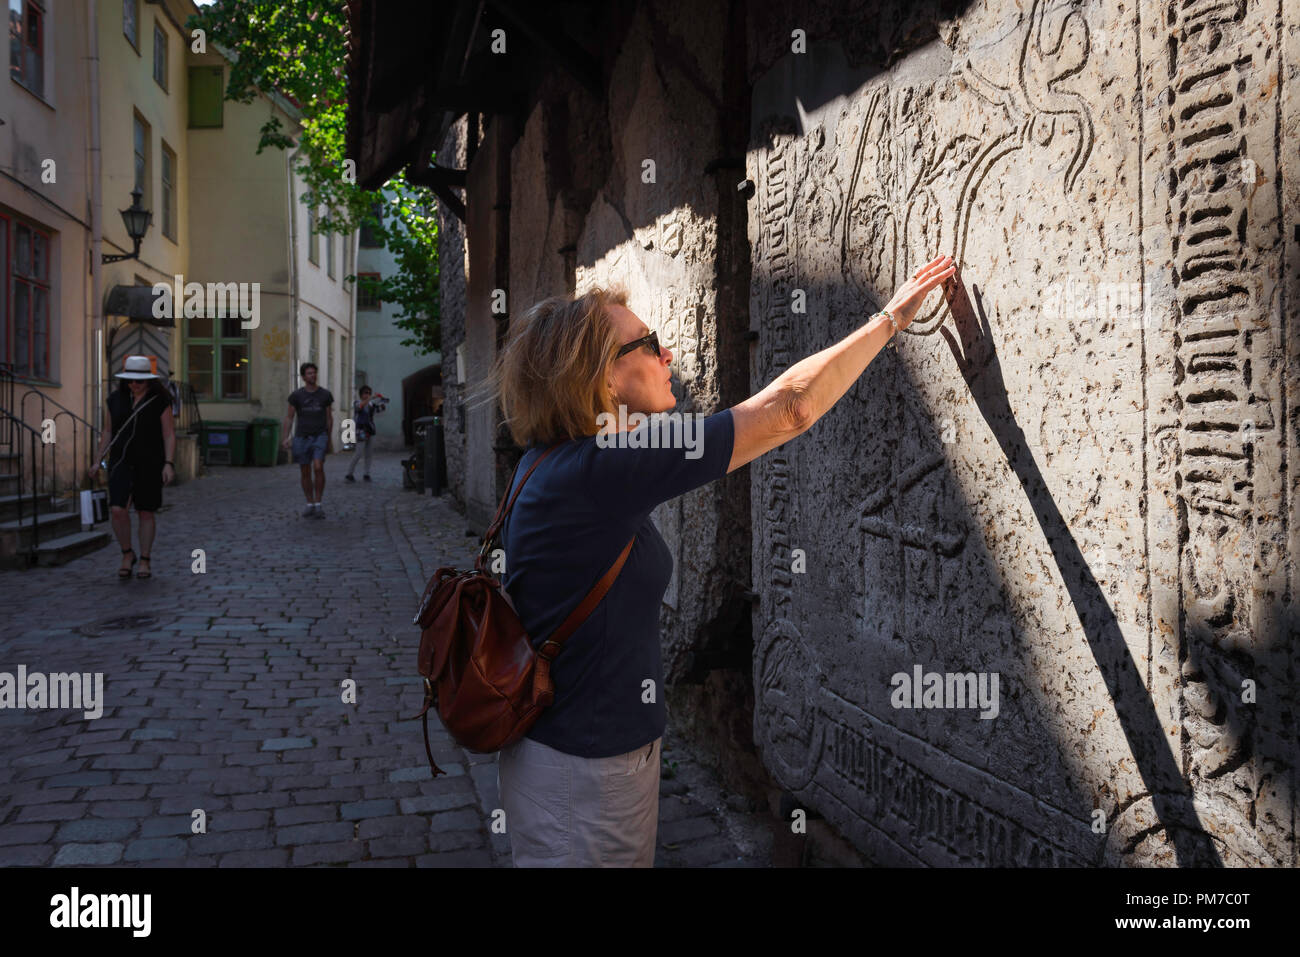 Viaggio donna esplorare, vista di una donna matura viaggiatore toccare una lapide medievale nella storica città vecchia (Vanalinn) zona di Tallinn, Estonia. Foto Stock